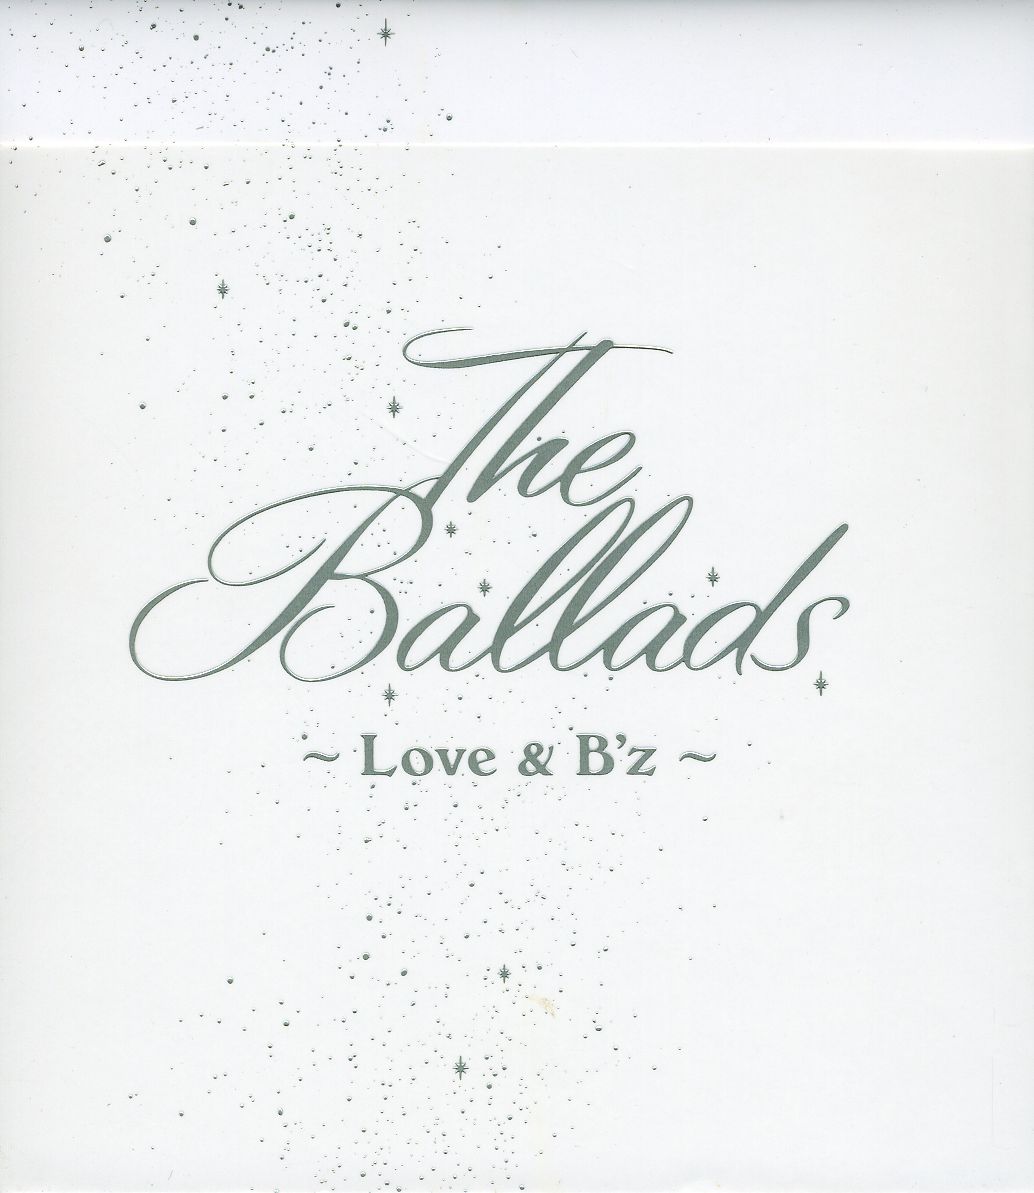 BALLADS: LOVE & B'Z